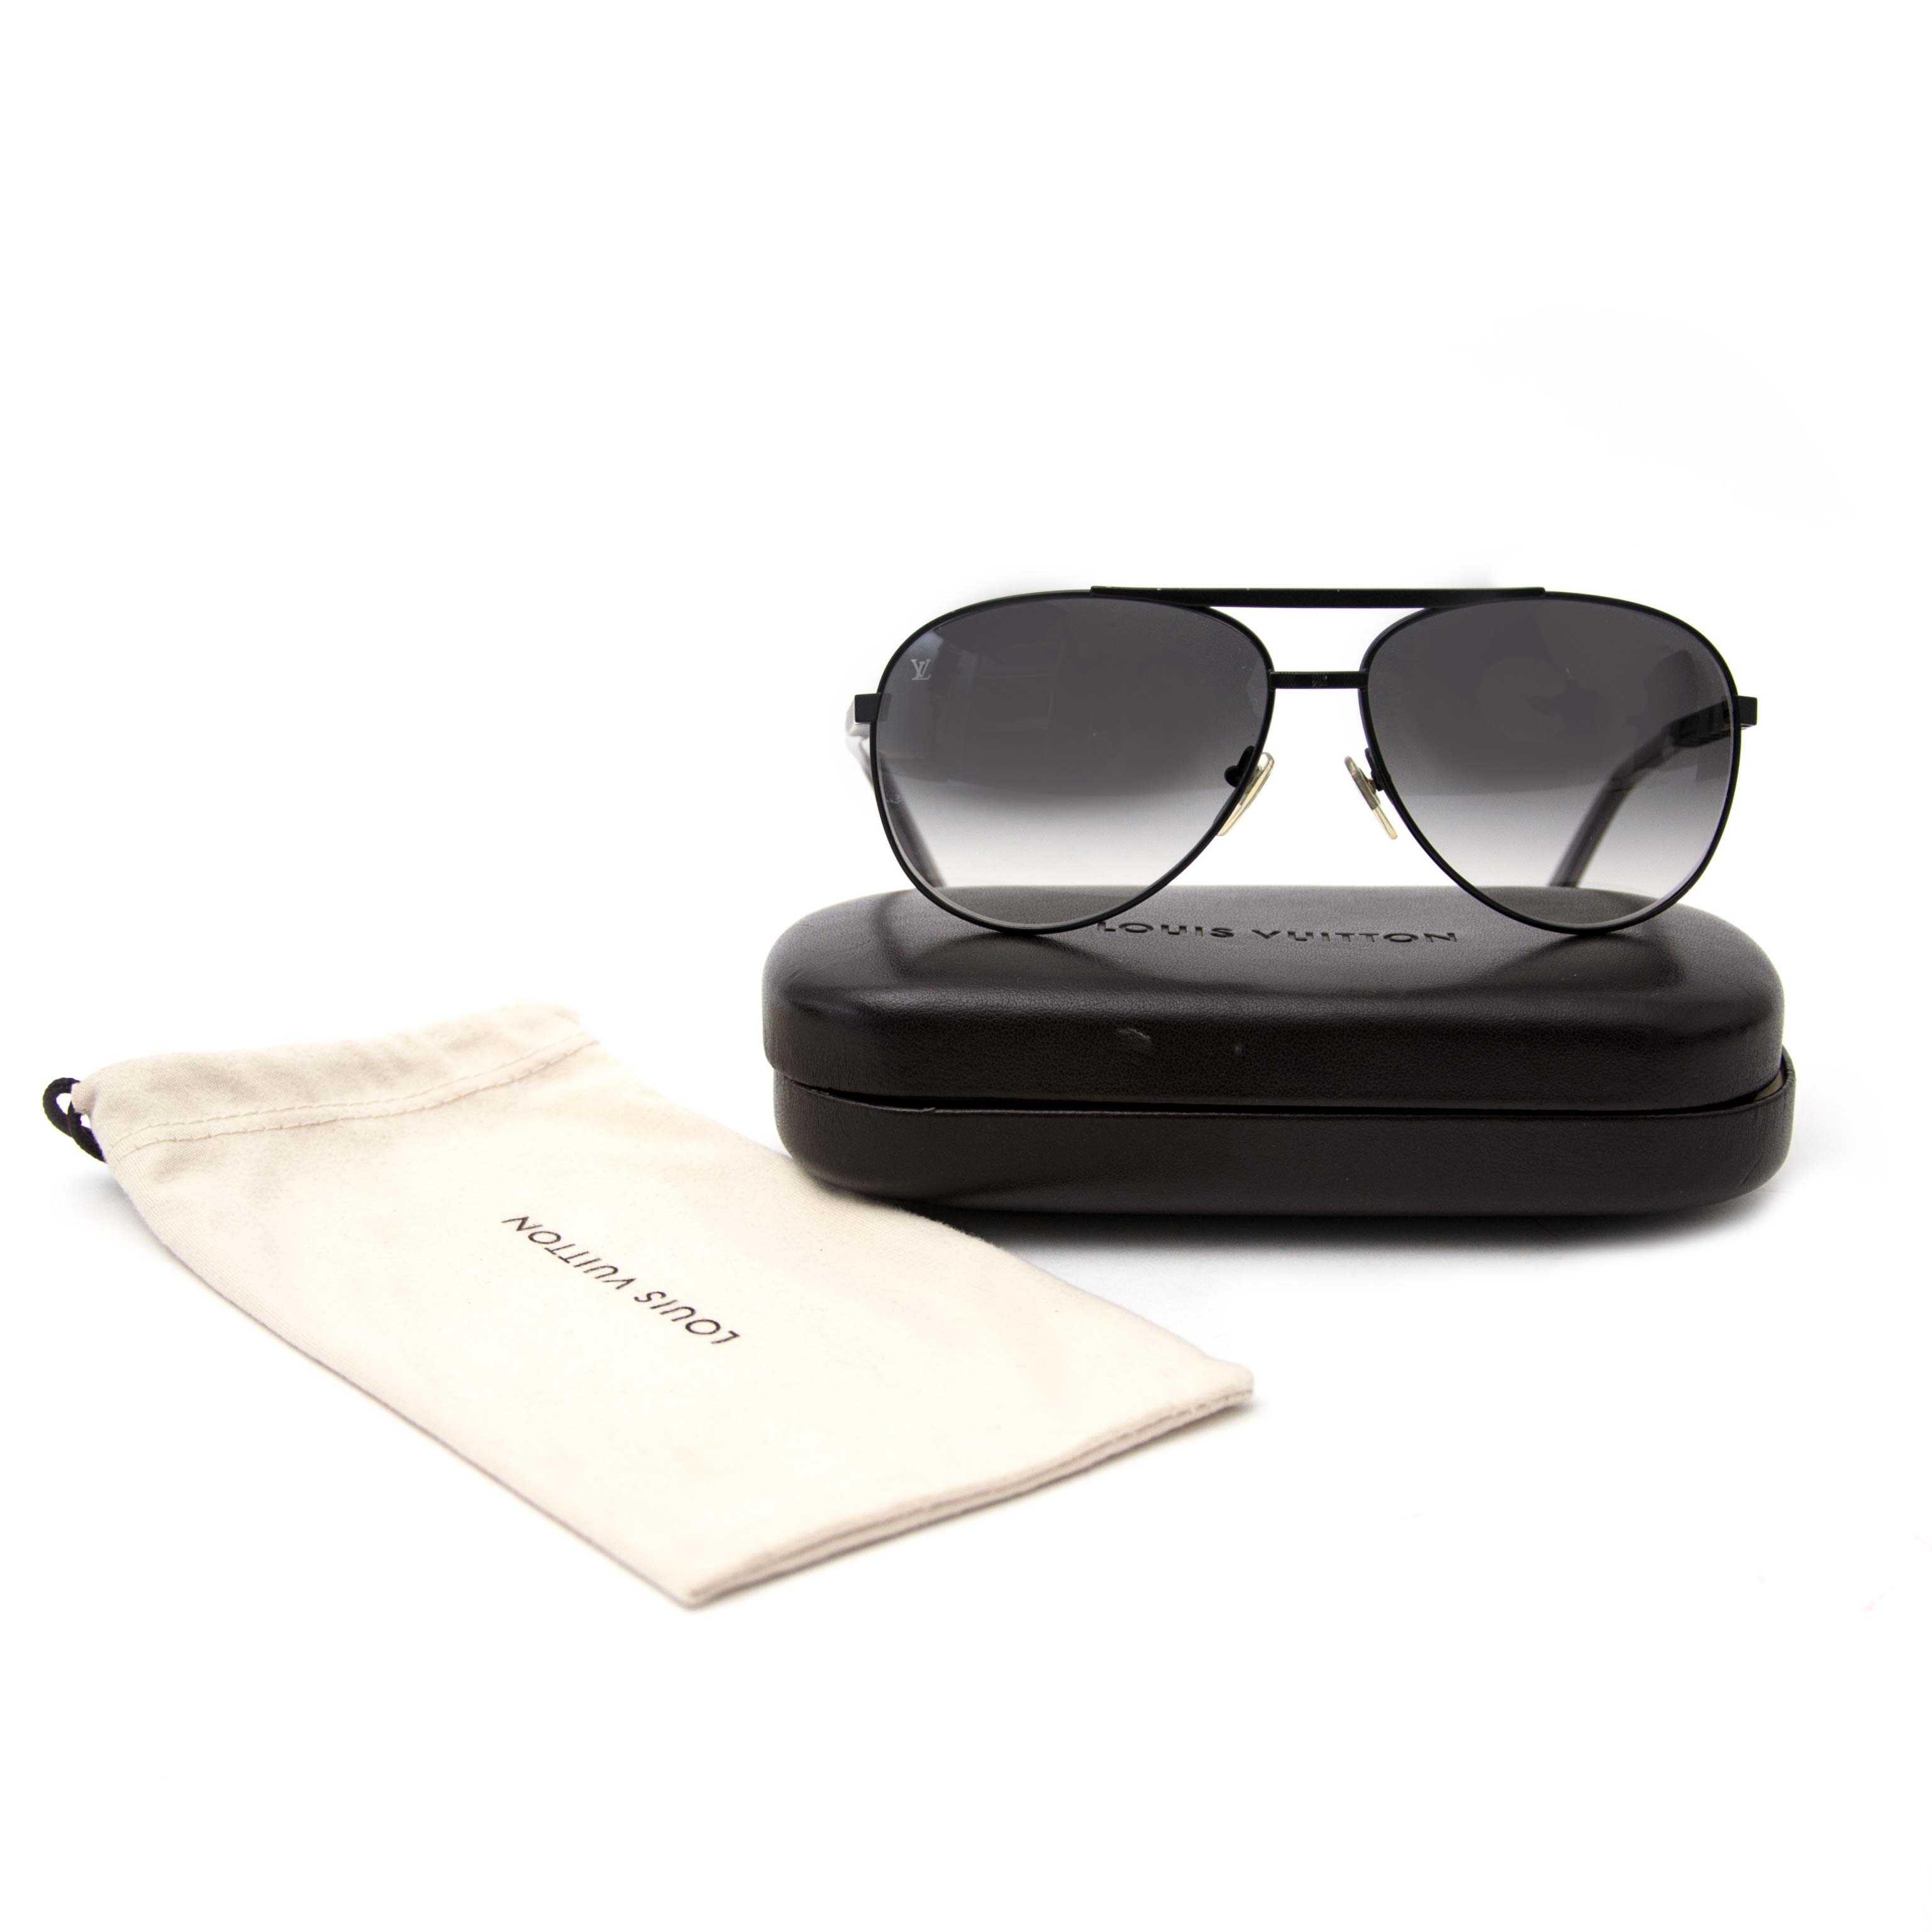 AA studio LV attitude sunglasses QC : r/DesignerReps